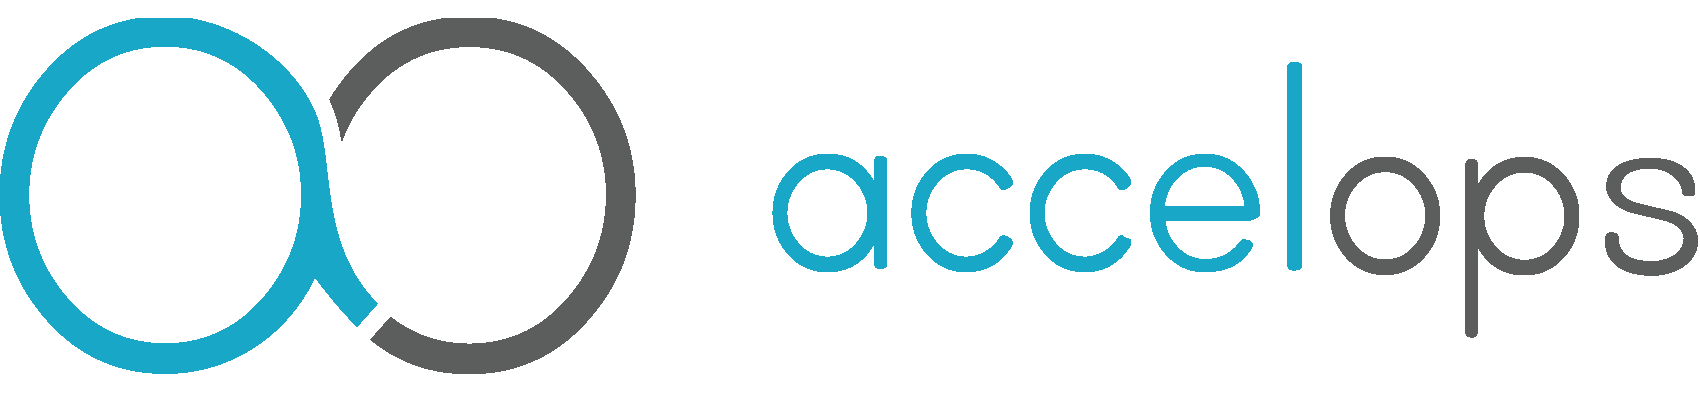 Accelops